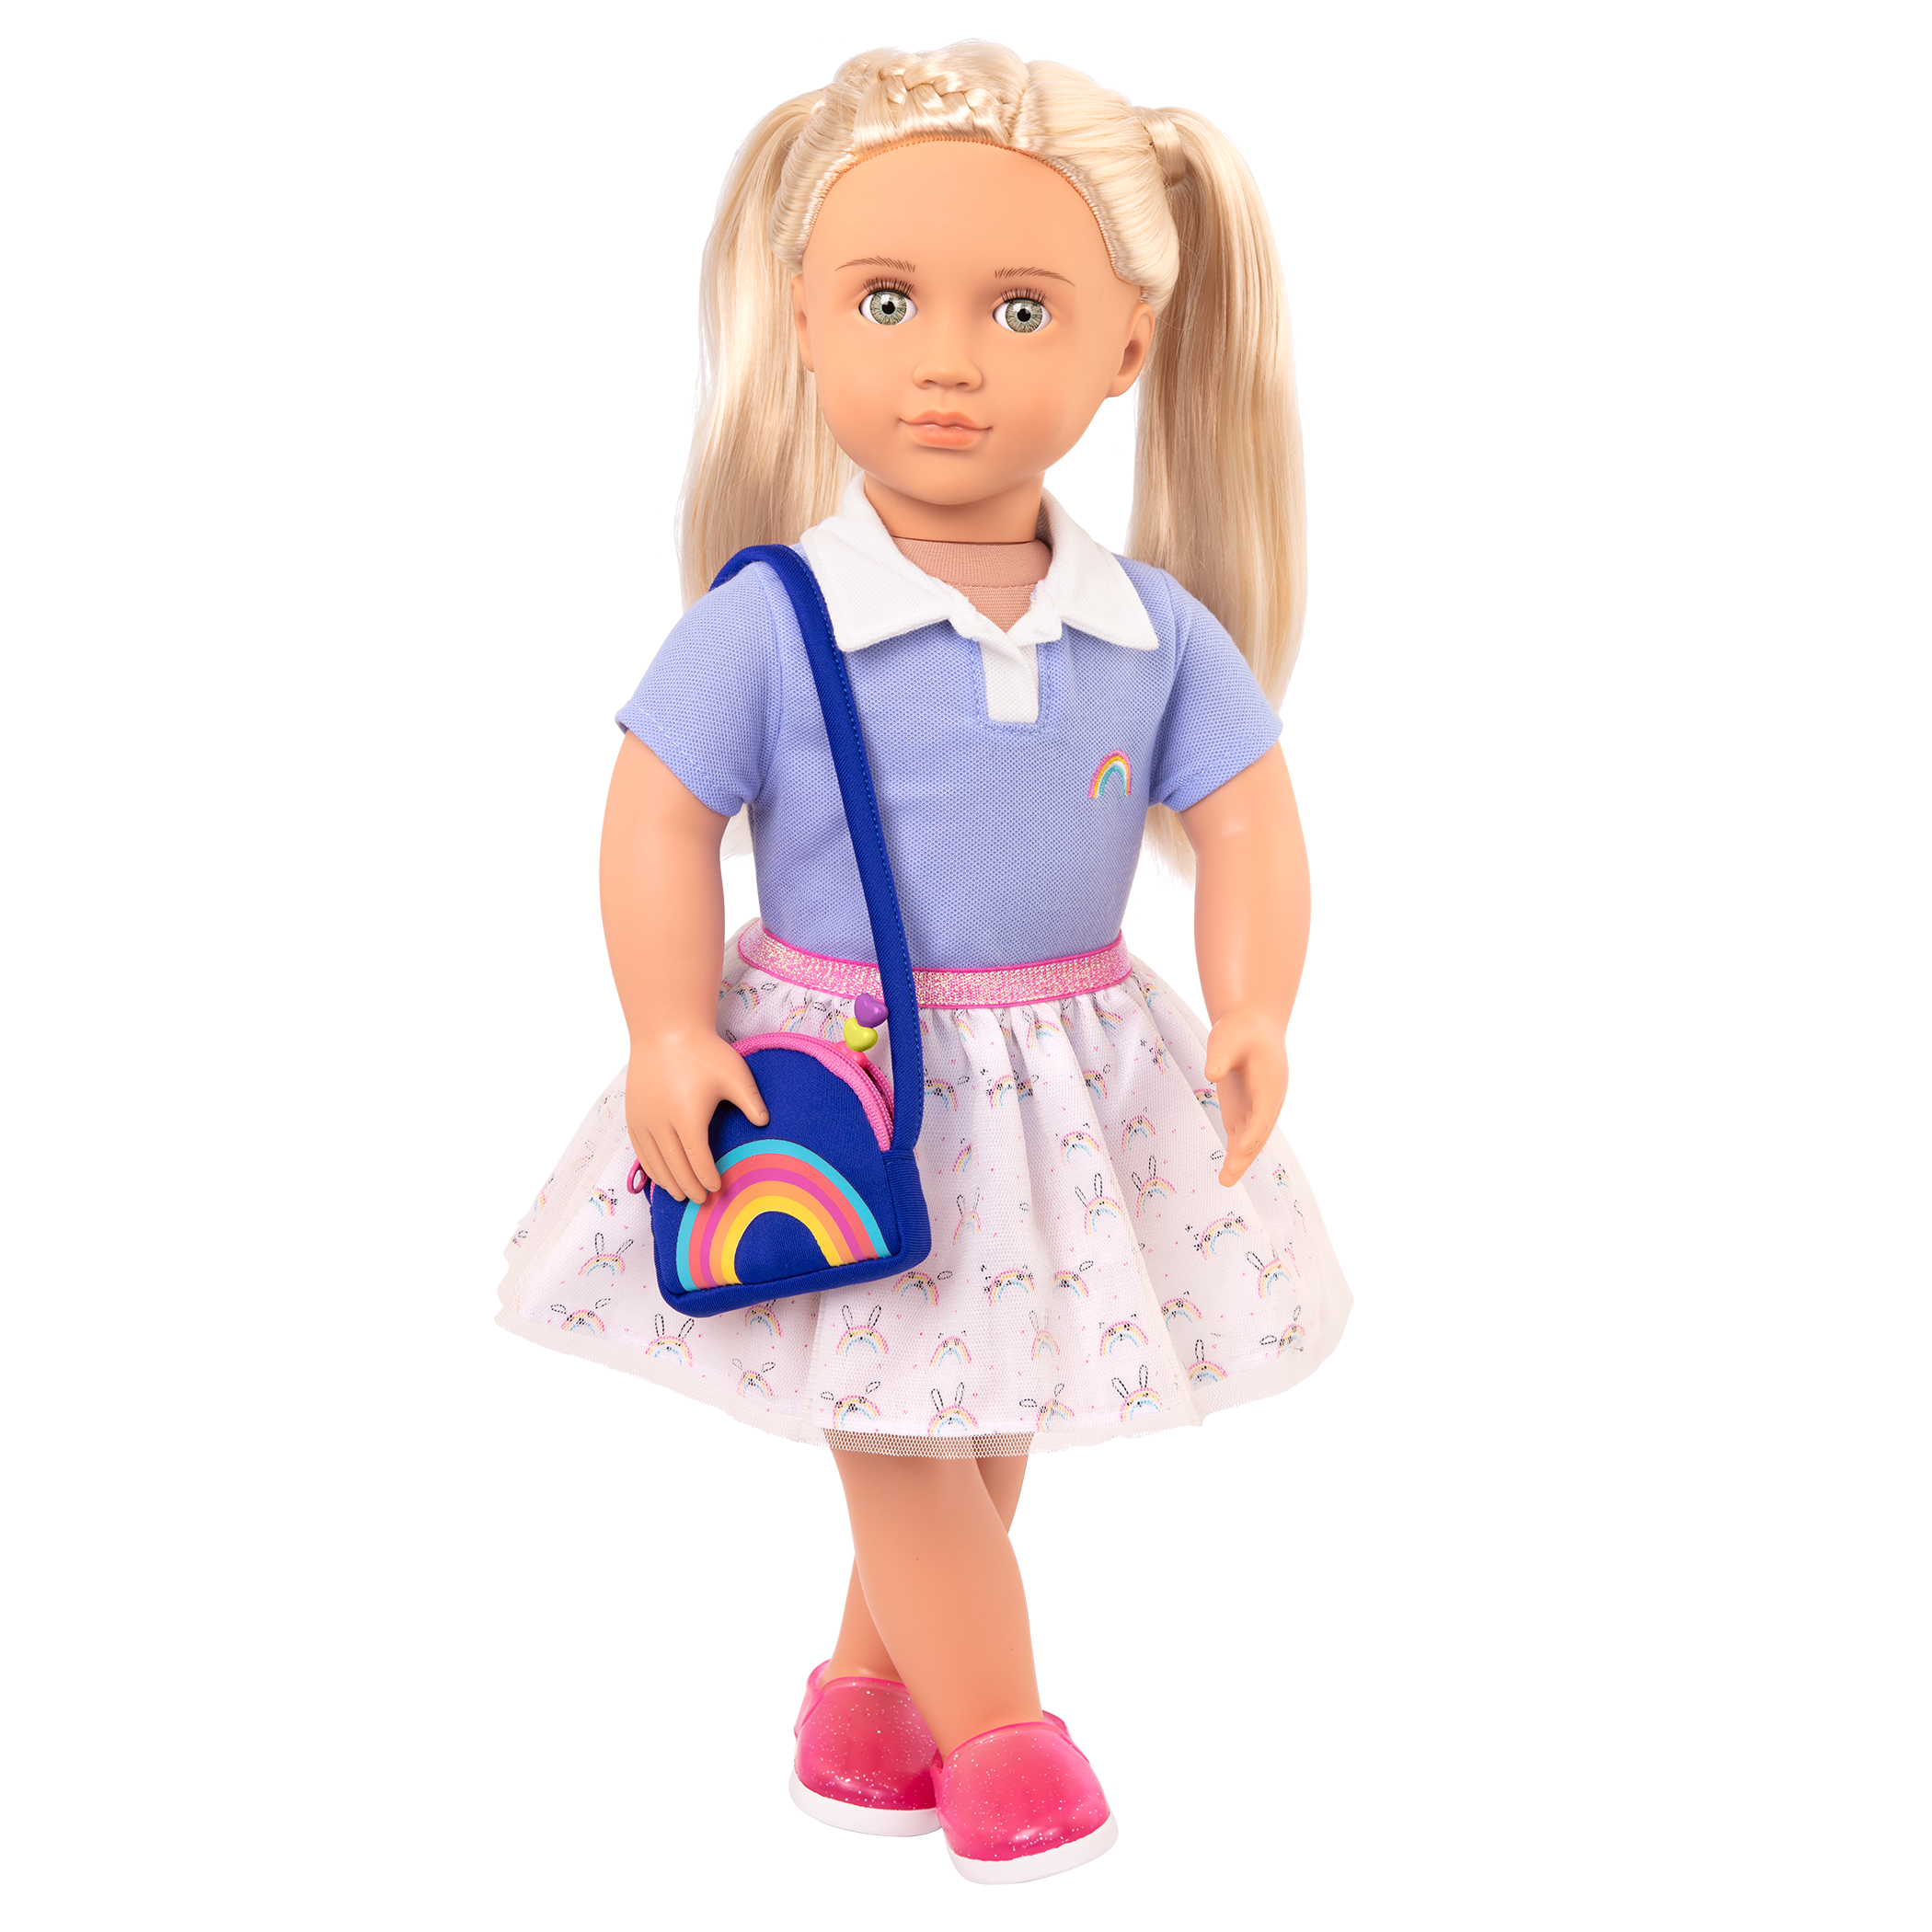 Completo da uniforme scolastica per bambole di 46 cm